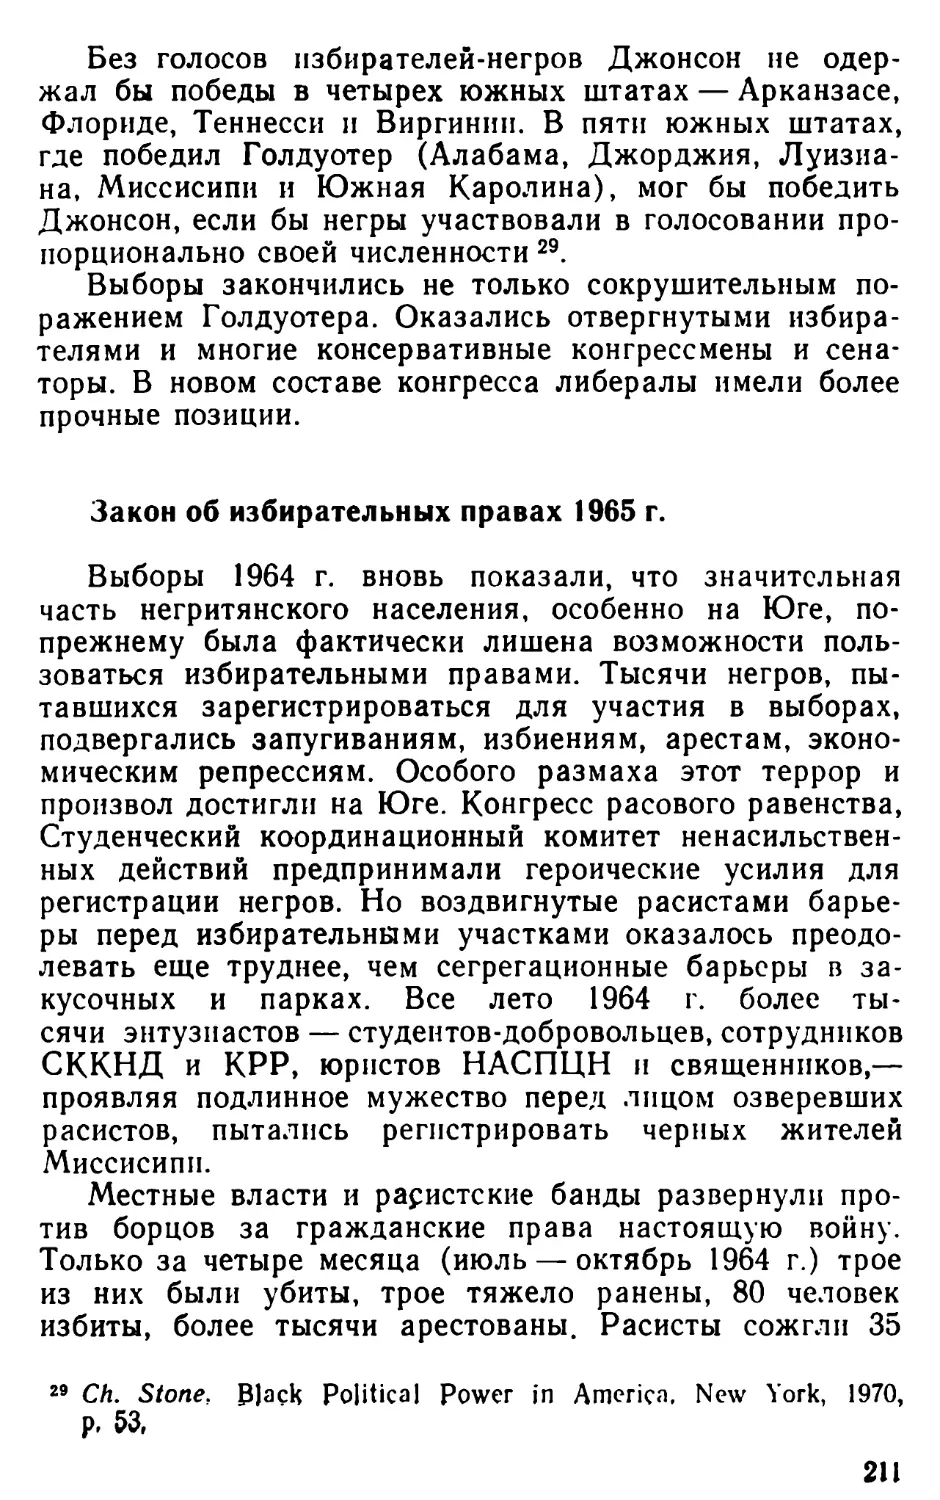 Закон об избирательных правах 1965 г